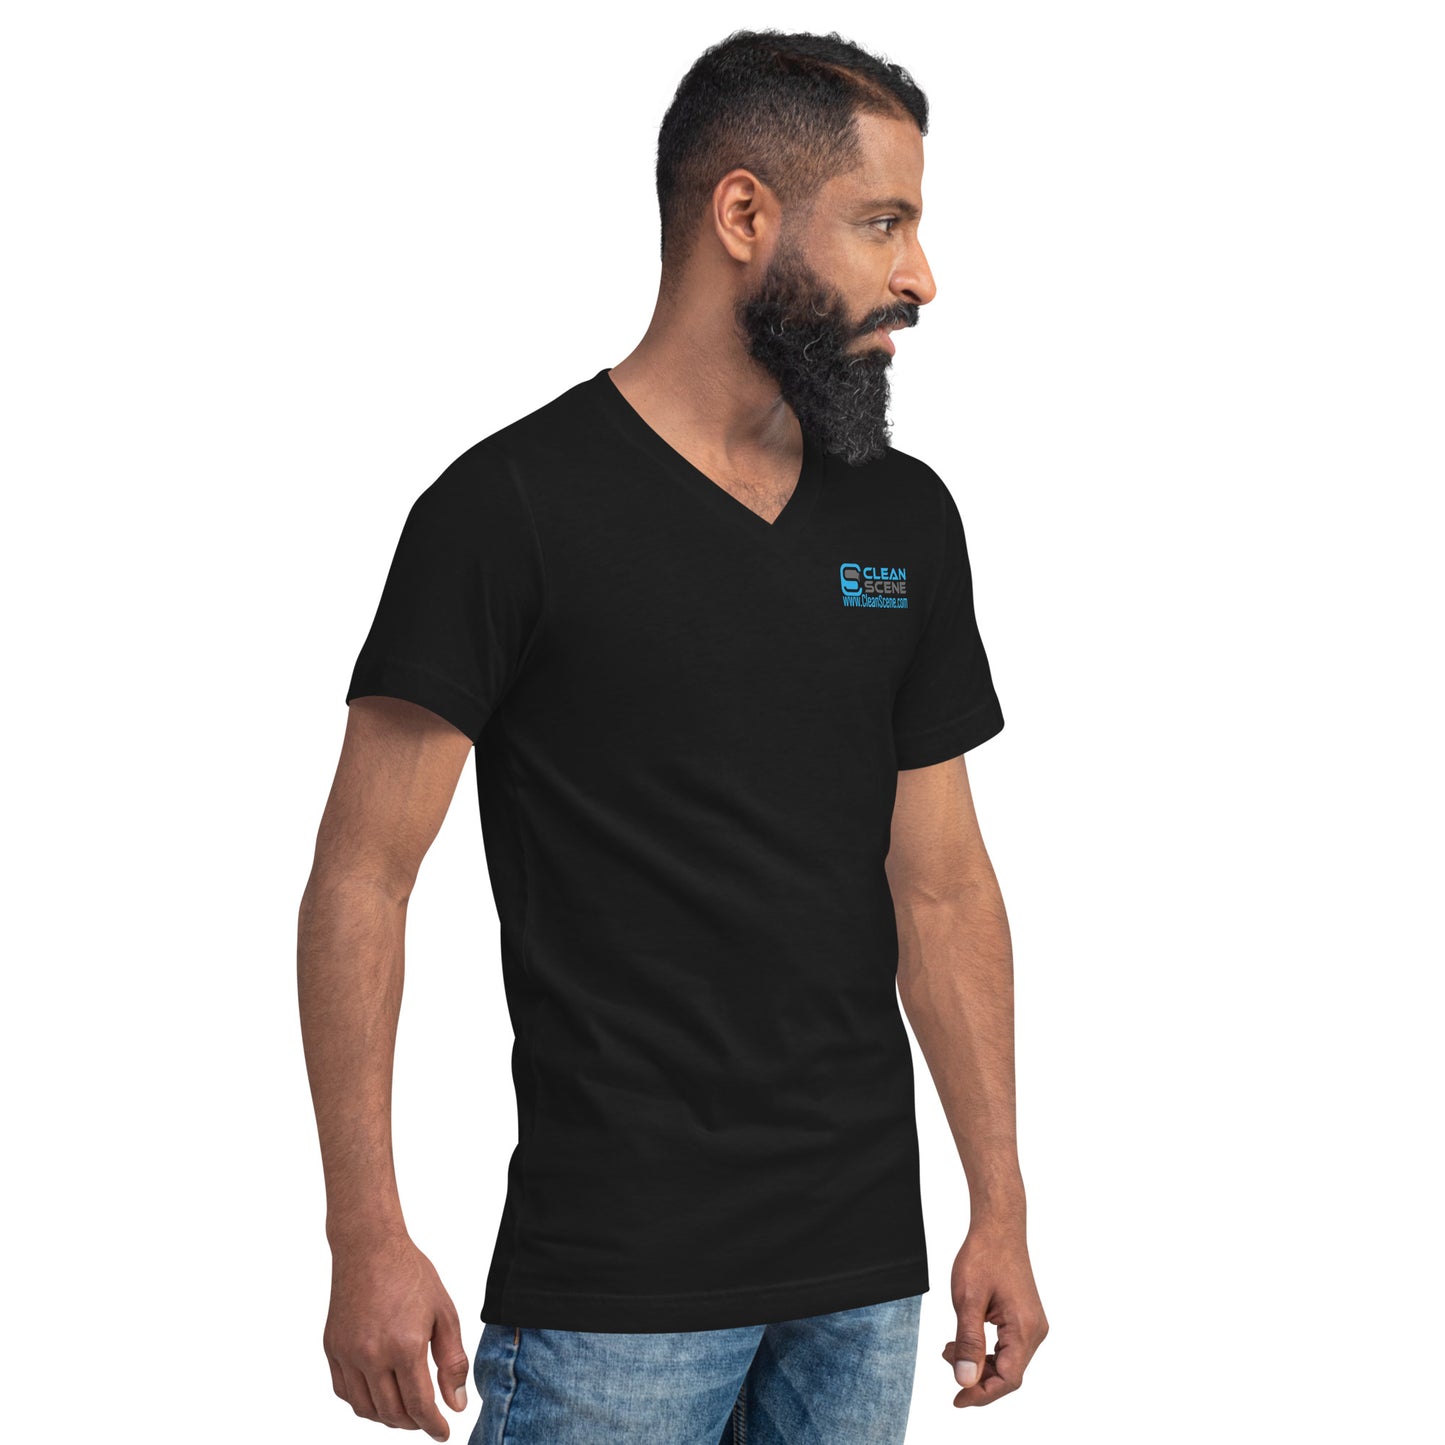 Clean Scene - Unisex Short Sleeve V-Neck T-Shirt